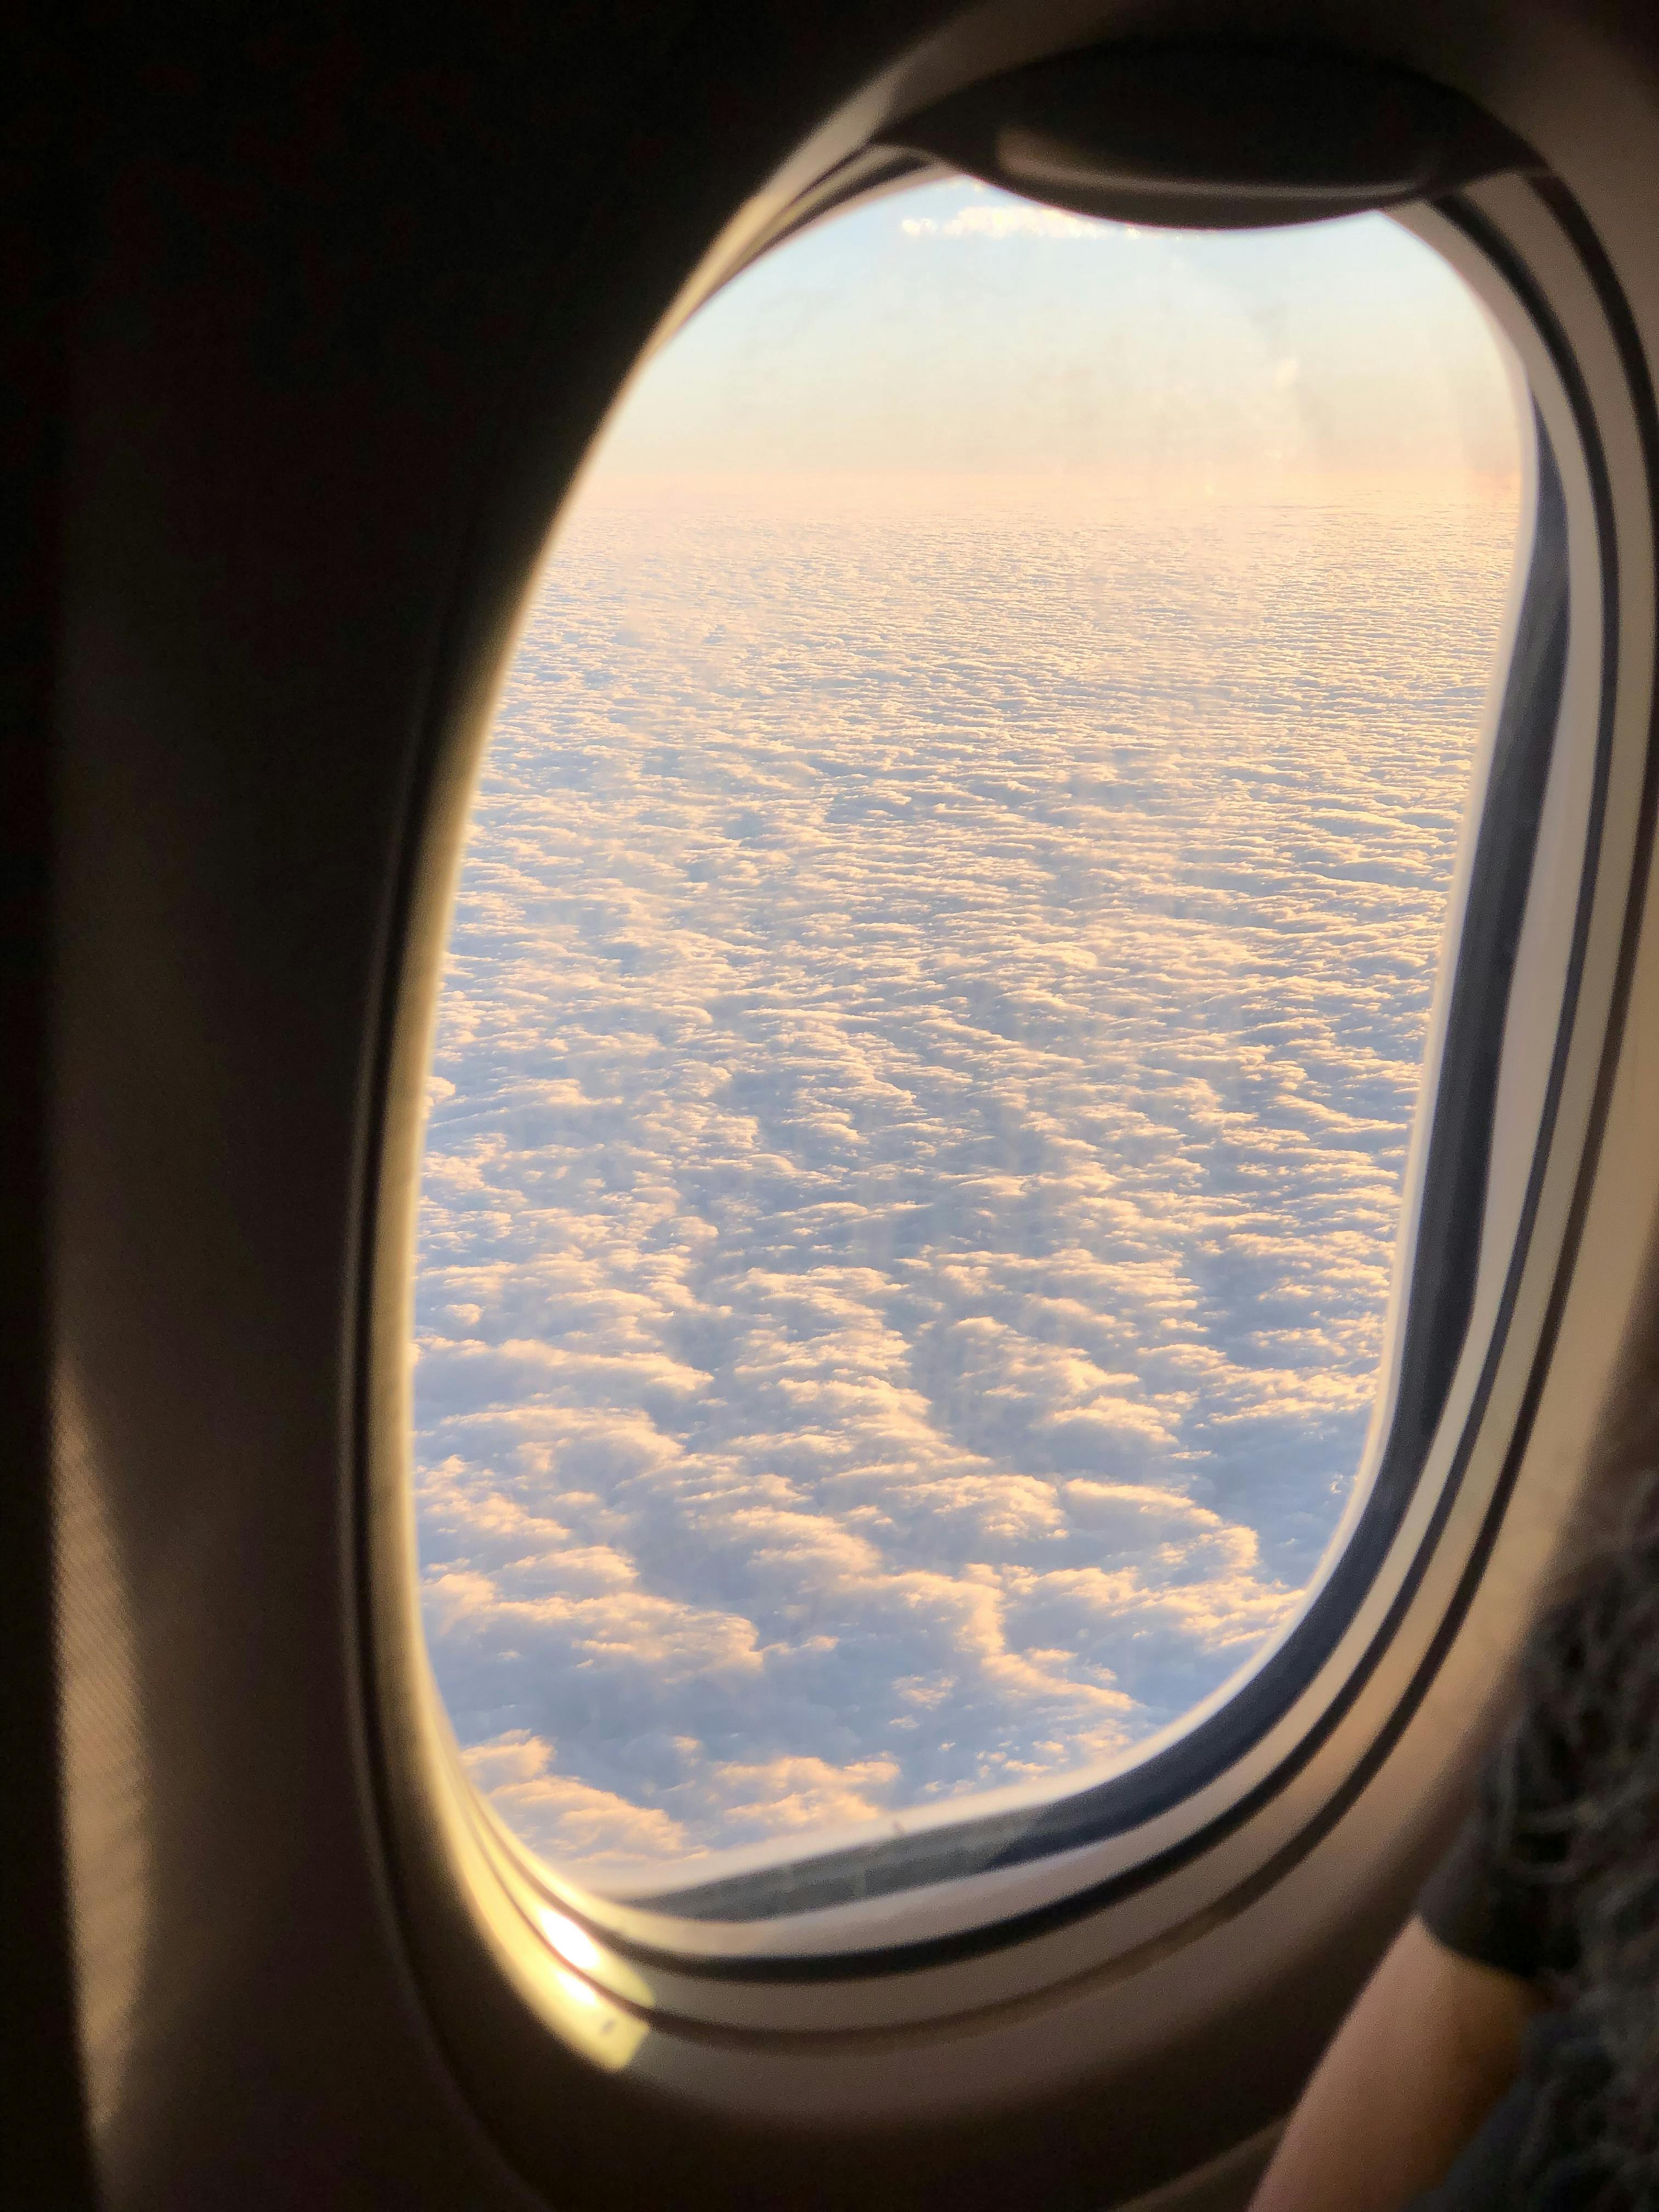 La vista desde la ventanilla de un avión | Fuente: Pexels